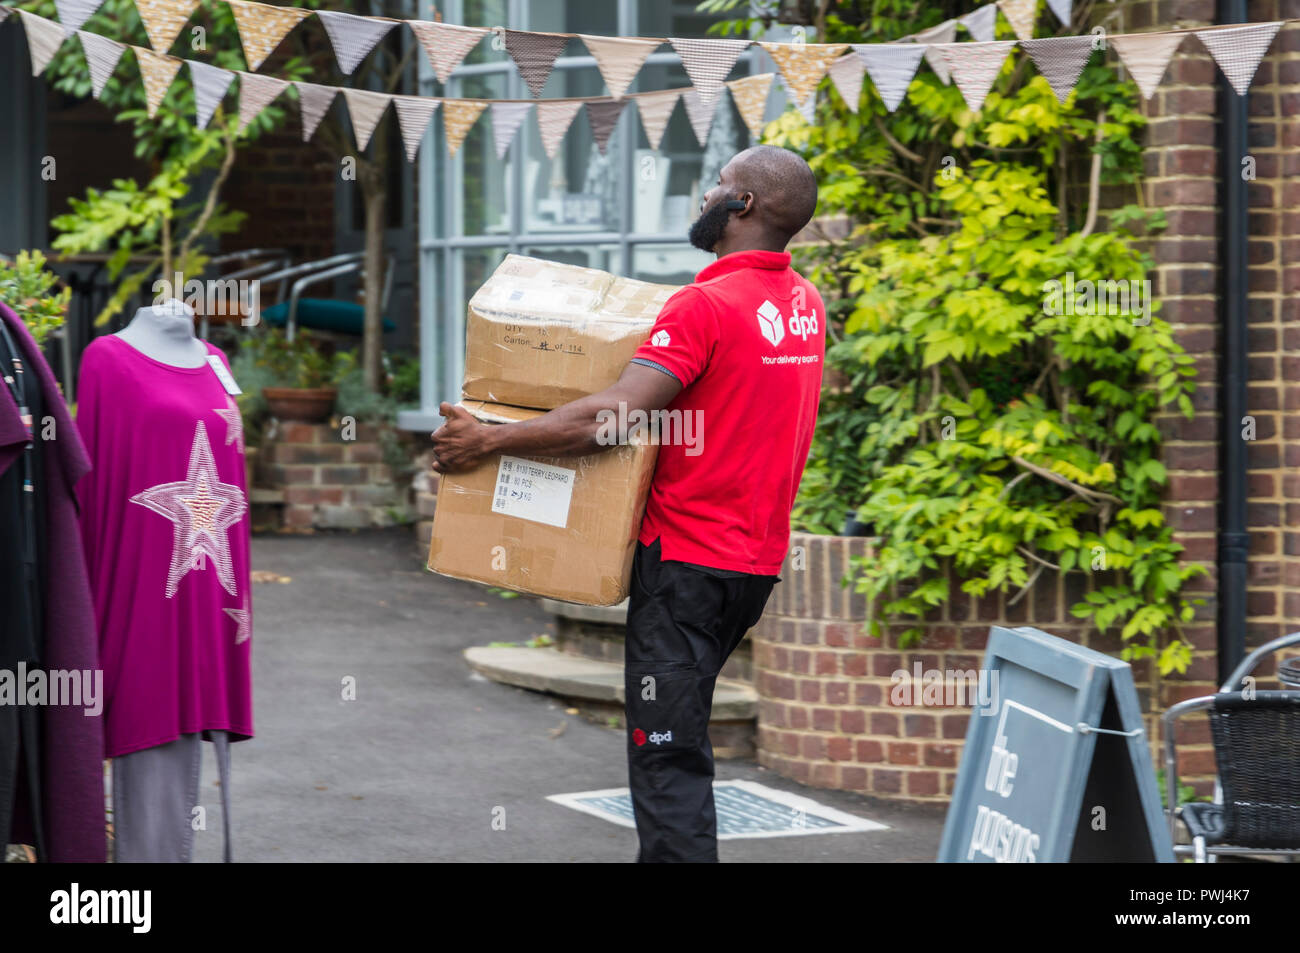 Chauffeur de livraison DPD de porter de lourds colis à un client dans le West Sussex, Angleterre, Royaume-Uni. Les livraisons de colis courrier britannique. Banque D'Images